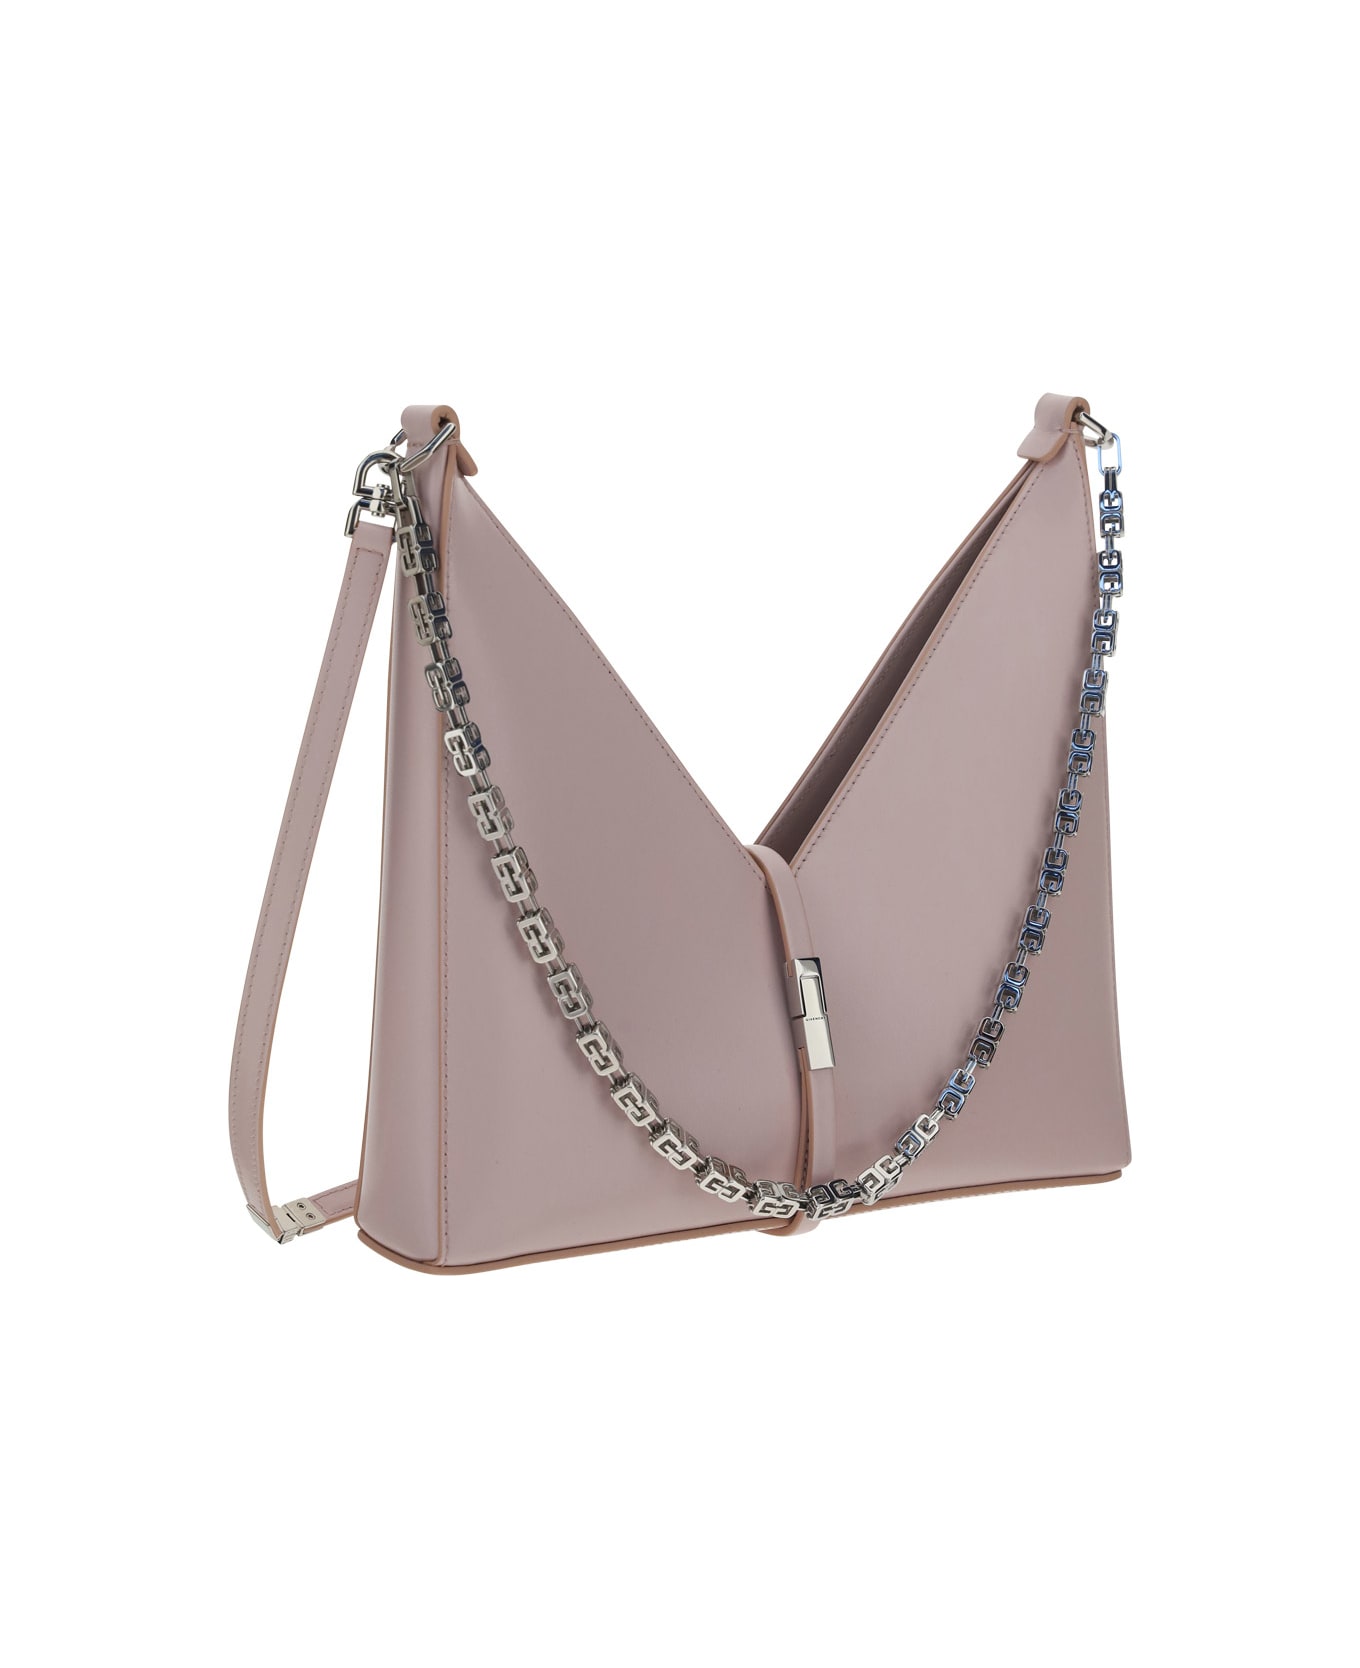 Givenchy Cut Out Shoulder Bag - Light Pink